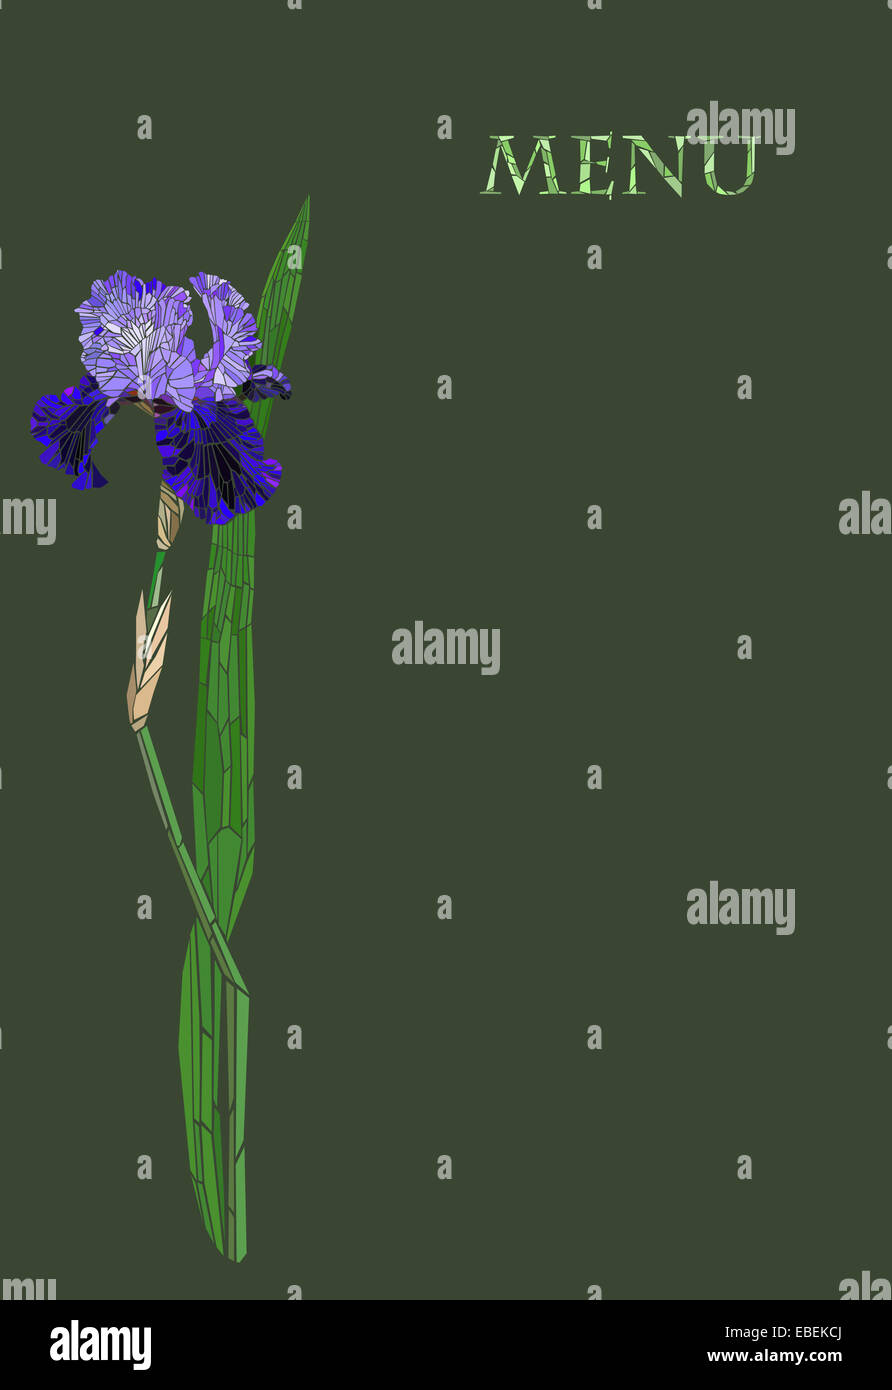 Restaurant menu avec une mosaïque iris fleurs Banque D'Images